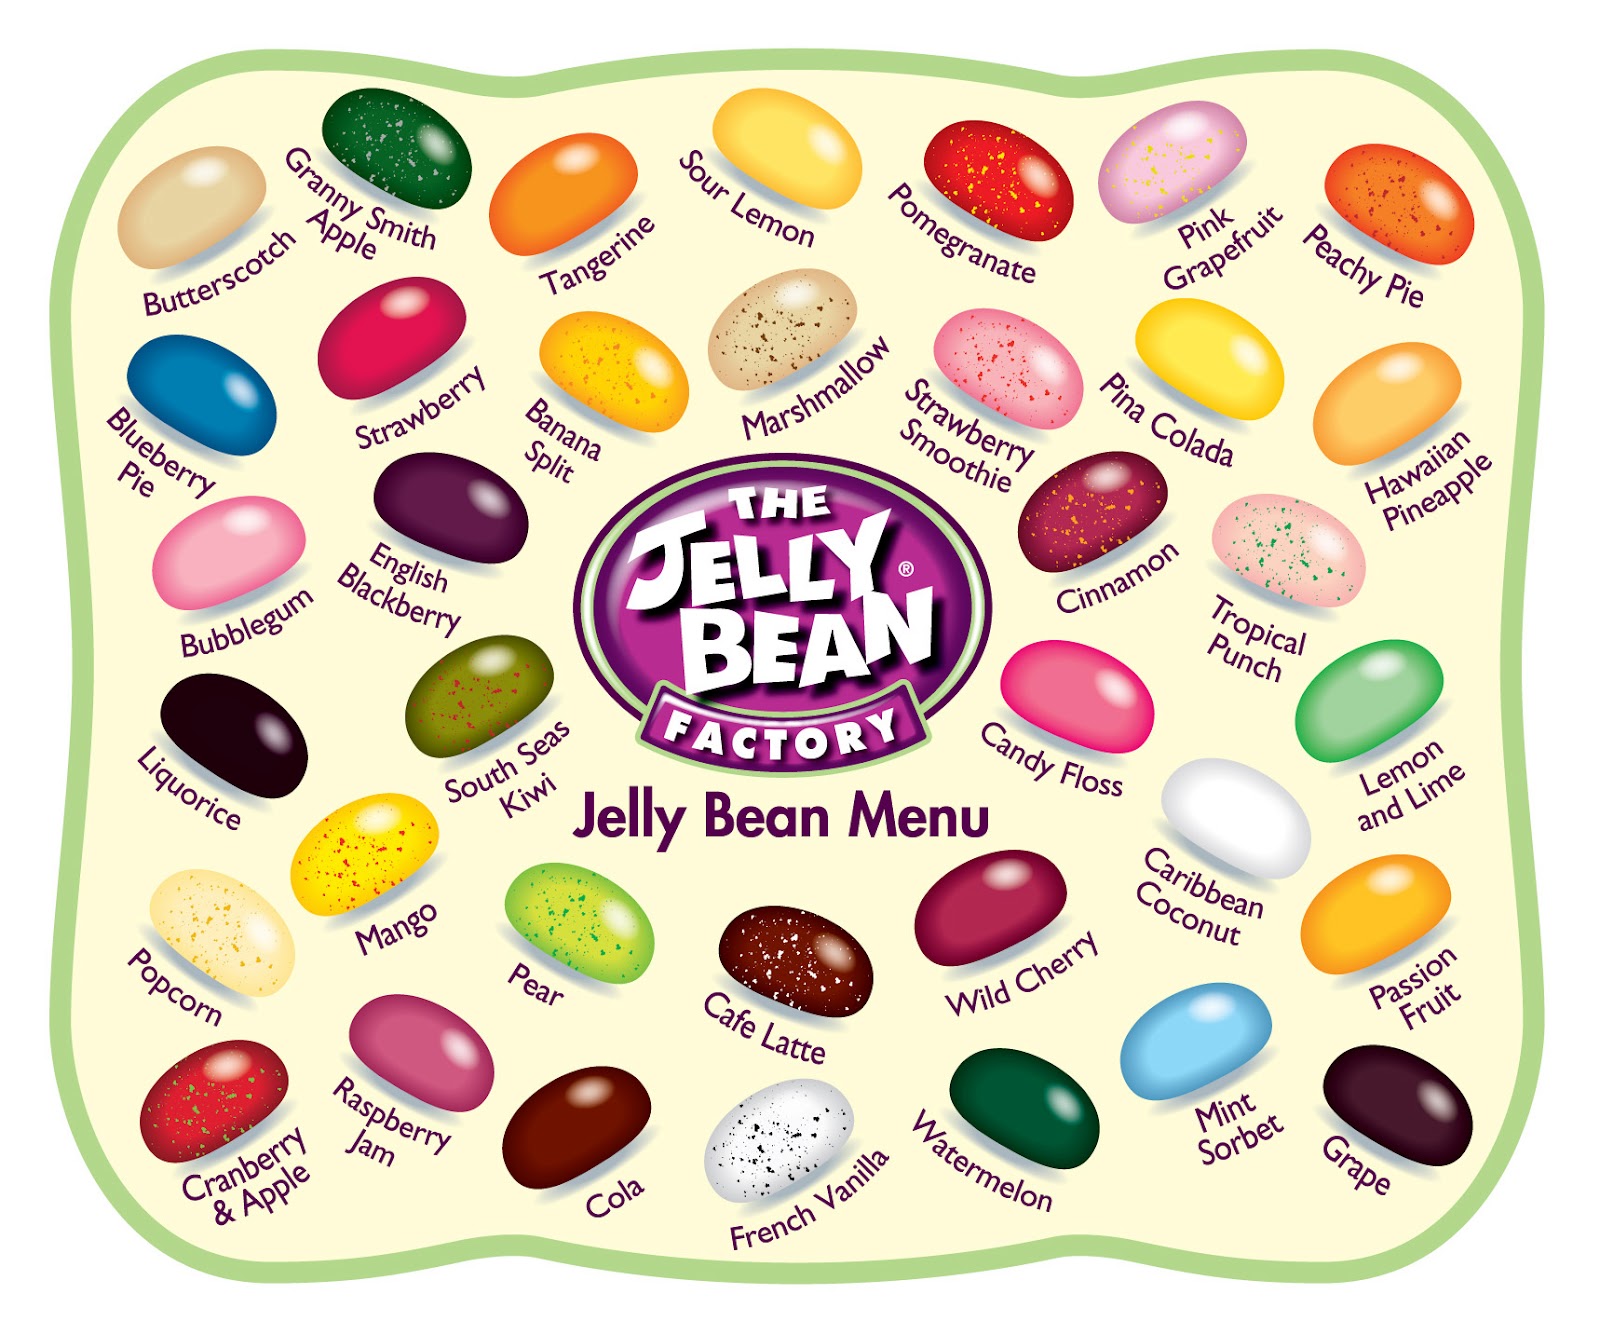 Jelly bean onlyfans. Джелли Белли вкусы. Конфеты Джелли Белли вкусы. Джелли Бин вкусы. The Jelly Bean Factory 36 вкусов.